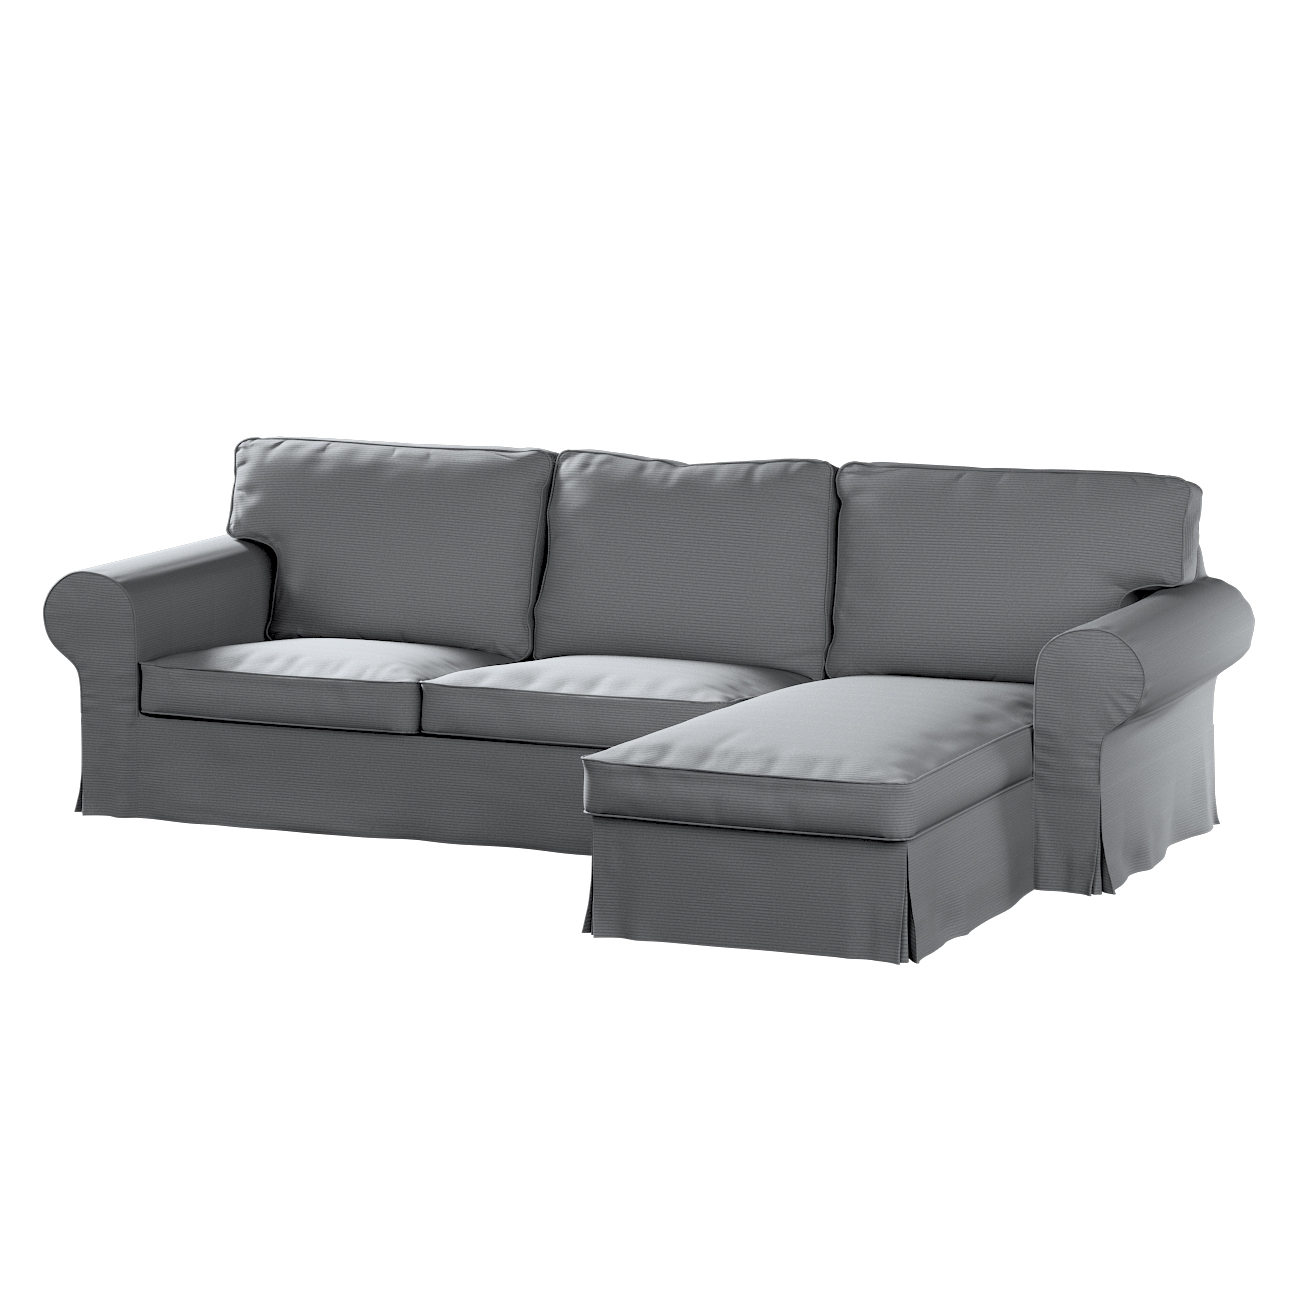 Bezug für Ektorp 2-Sitzer Sofa mit Recamiere, hellgrau, Ektorp 2-Sitzer Sof günstig online kaufen